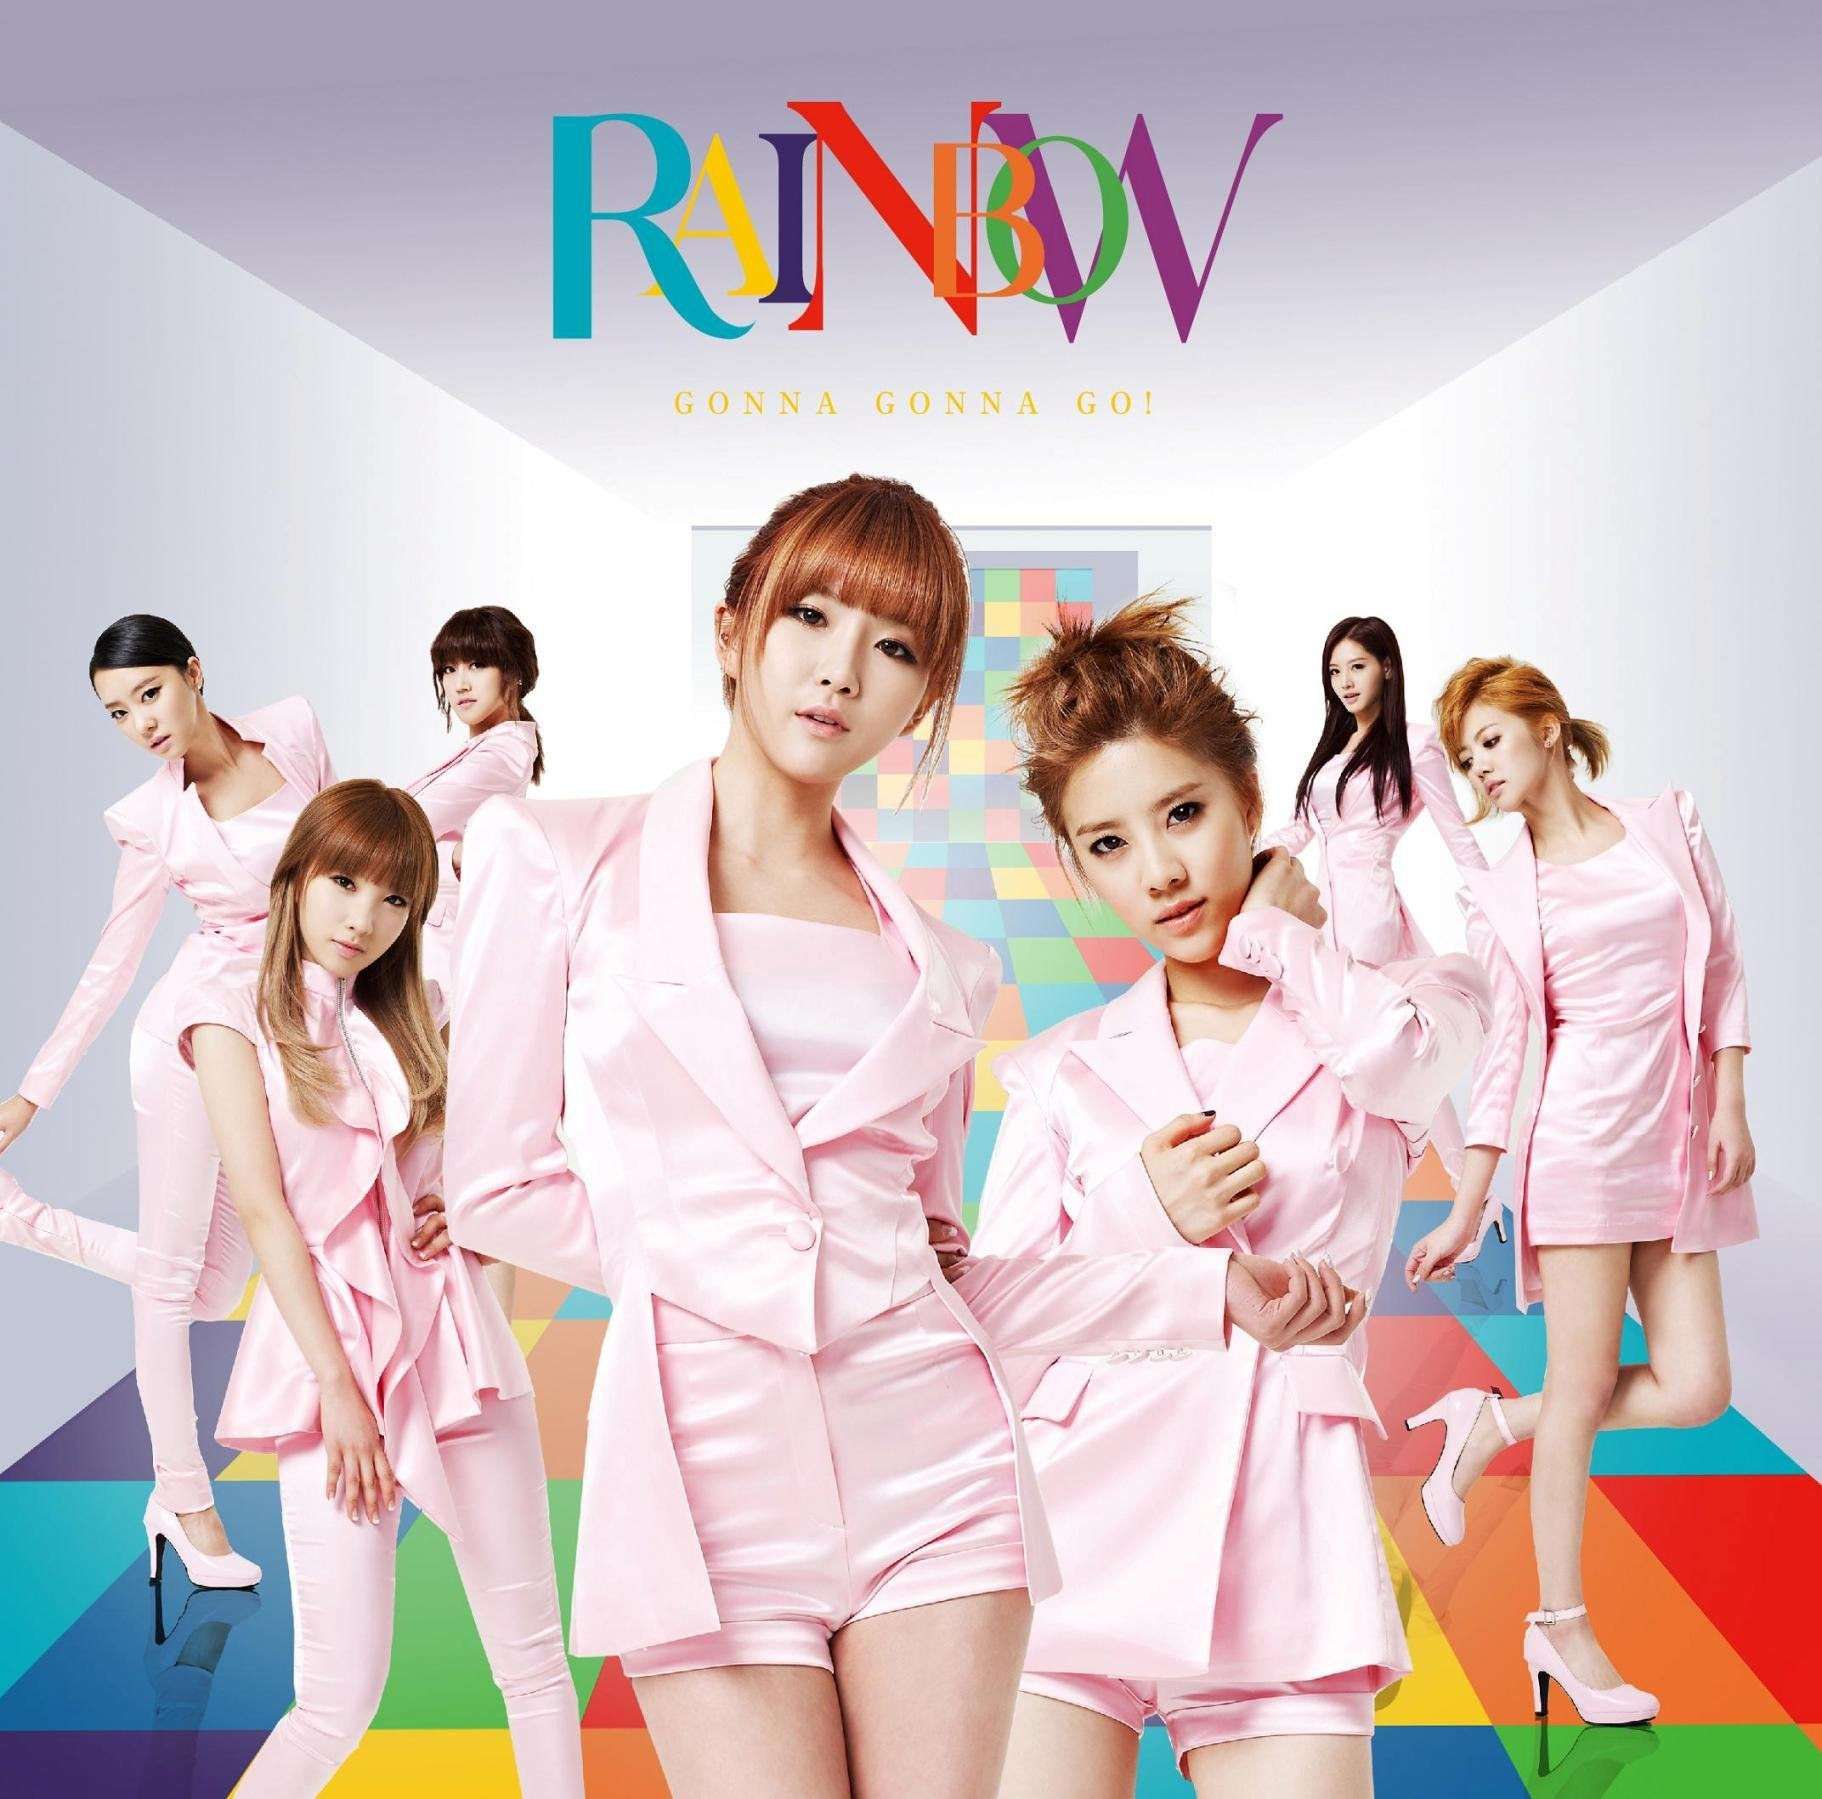 [17.02.2012][News] Rainbow chính thức thông báo về single tiếng Nhật thứ 3 - "Gonna Gonna Go!" 1cdb10